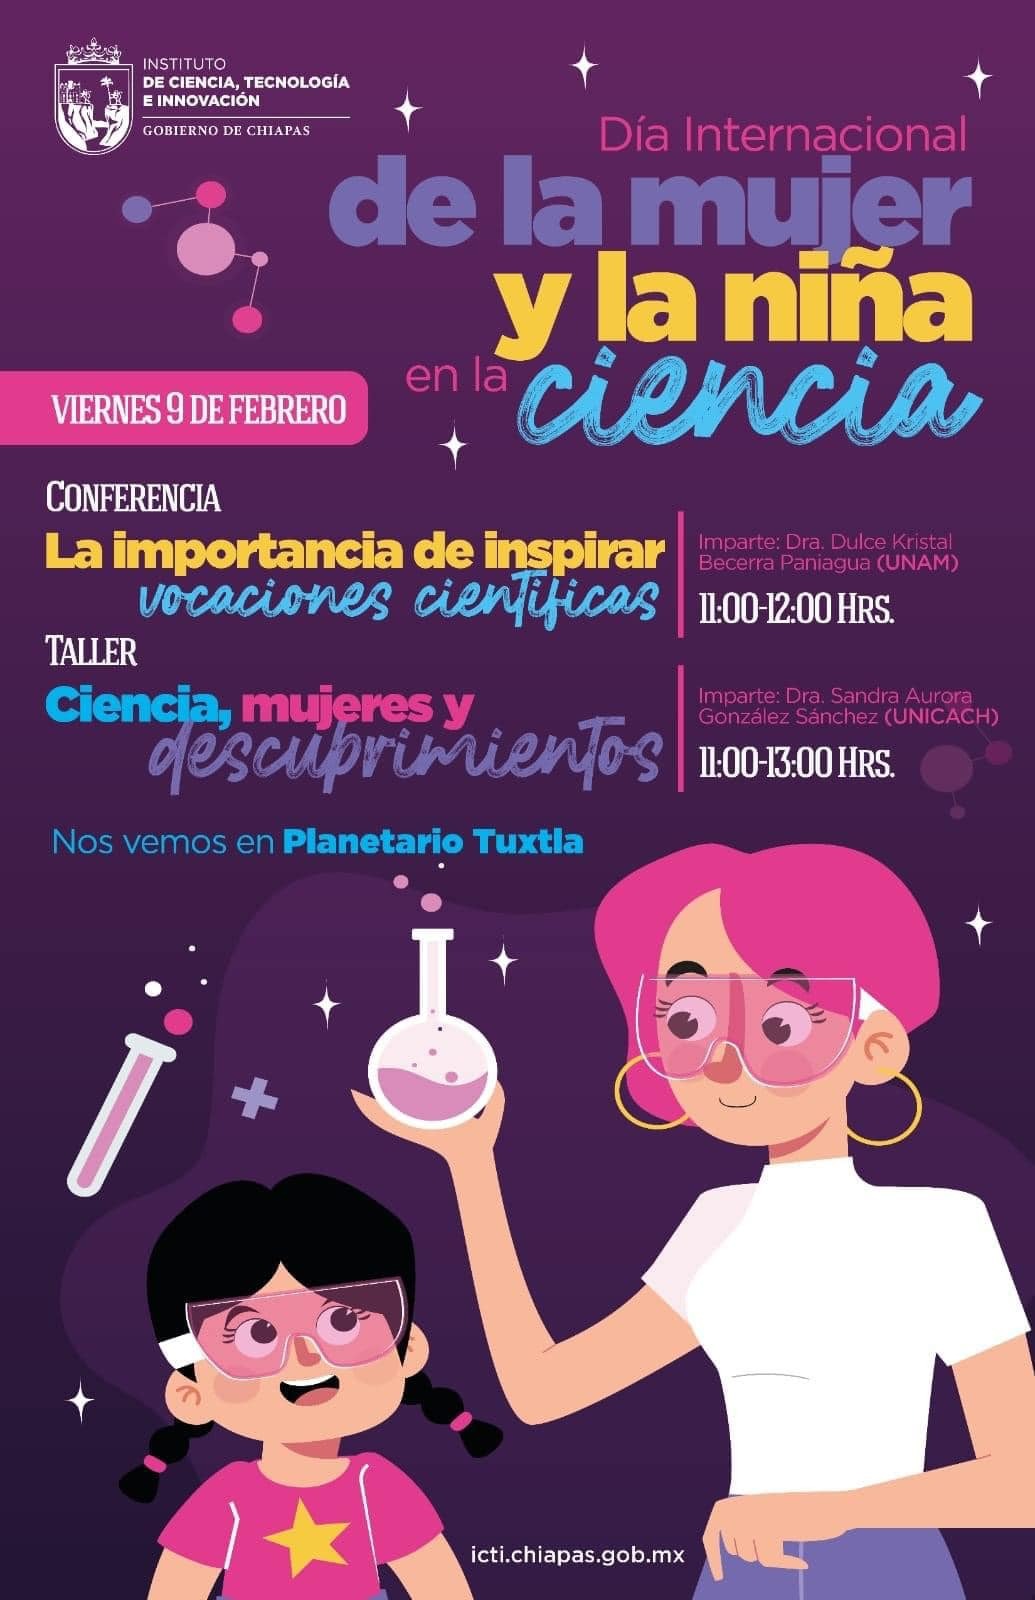 Invitan a conmemorar el Día Internacional de las Mujeres y las Niñas en la Ciencia, junto al ICTI Chiapas